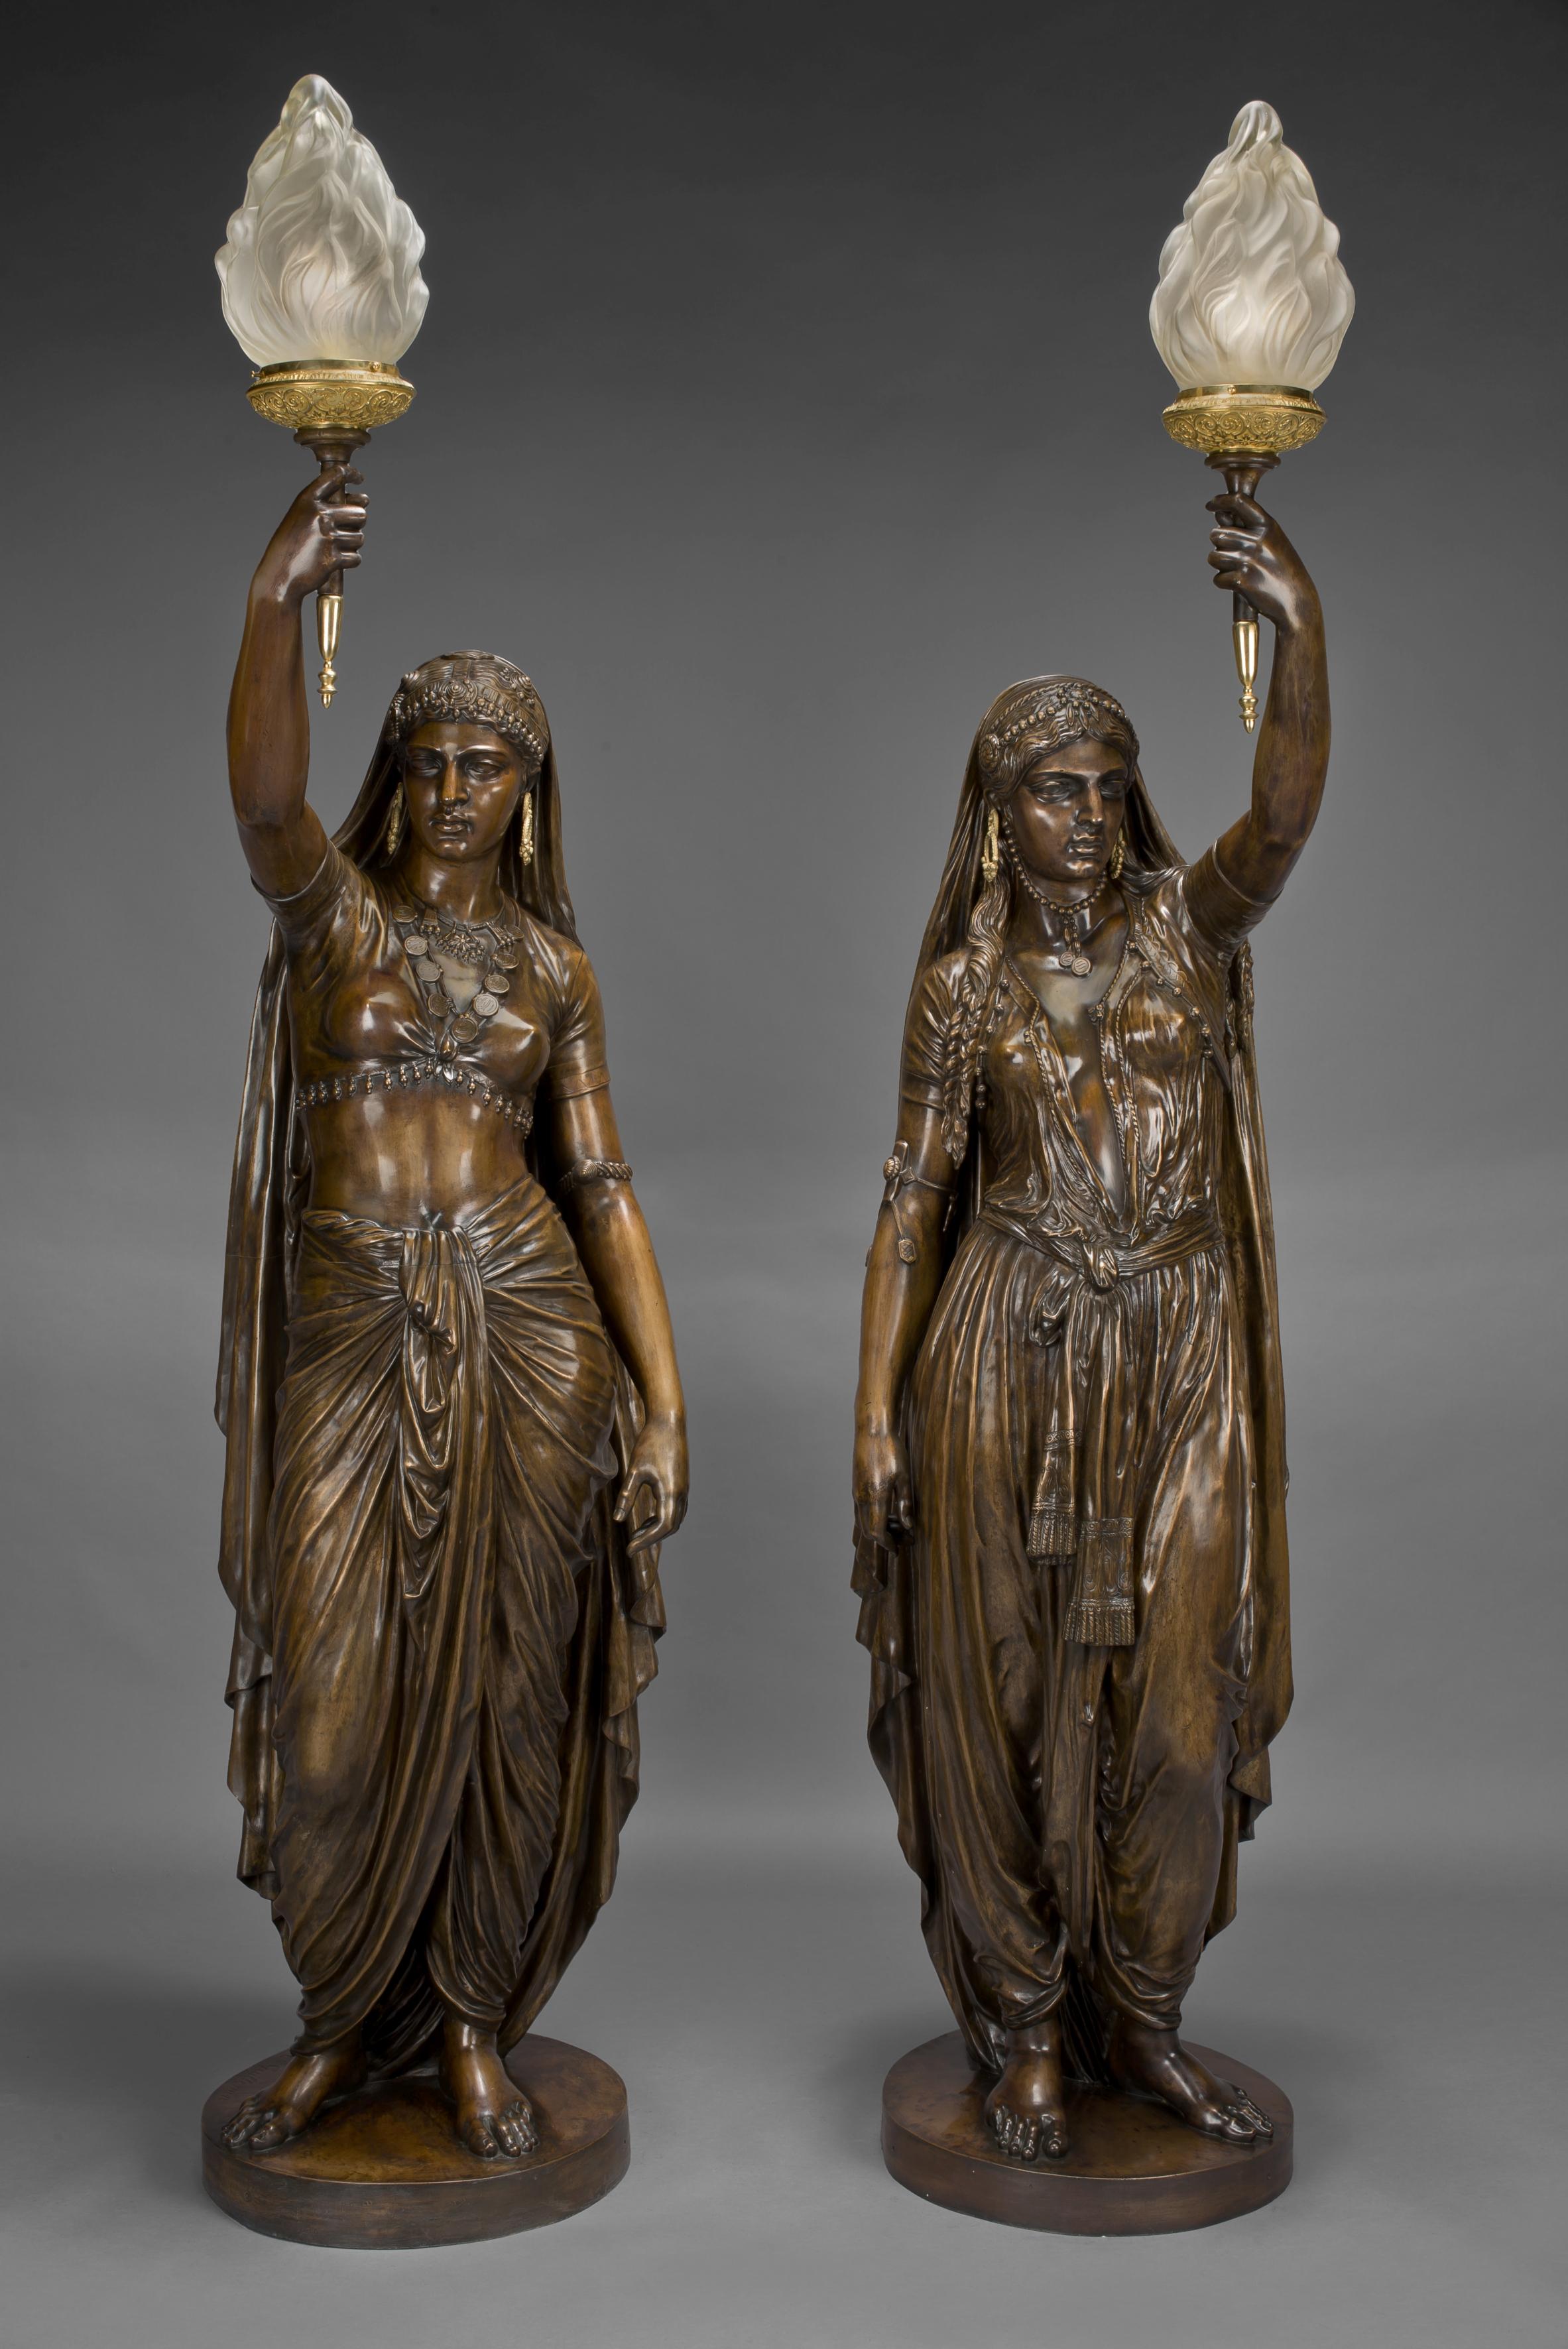 Une paire très importante de grands flambeaux figuratifs en bronze patiné d'Émile Guillemin, fondus par Ferdinand Barbedienne.

Français, daté de 1872.

Barbedienne Titre : 